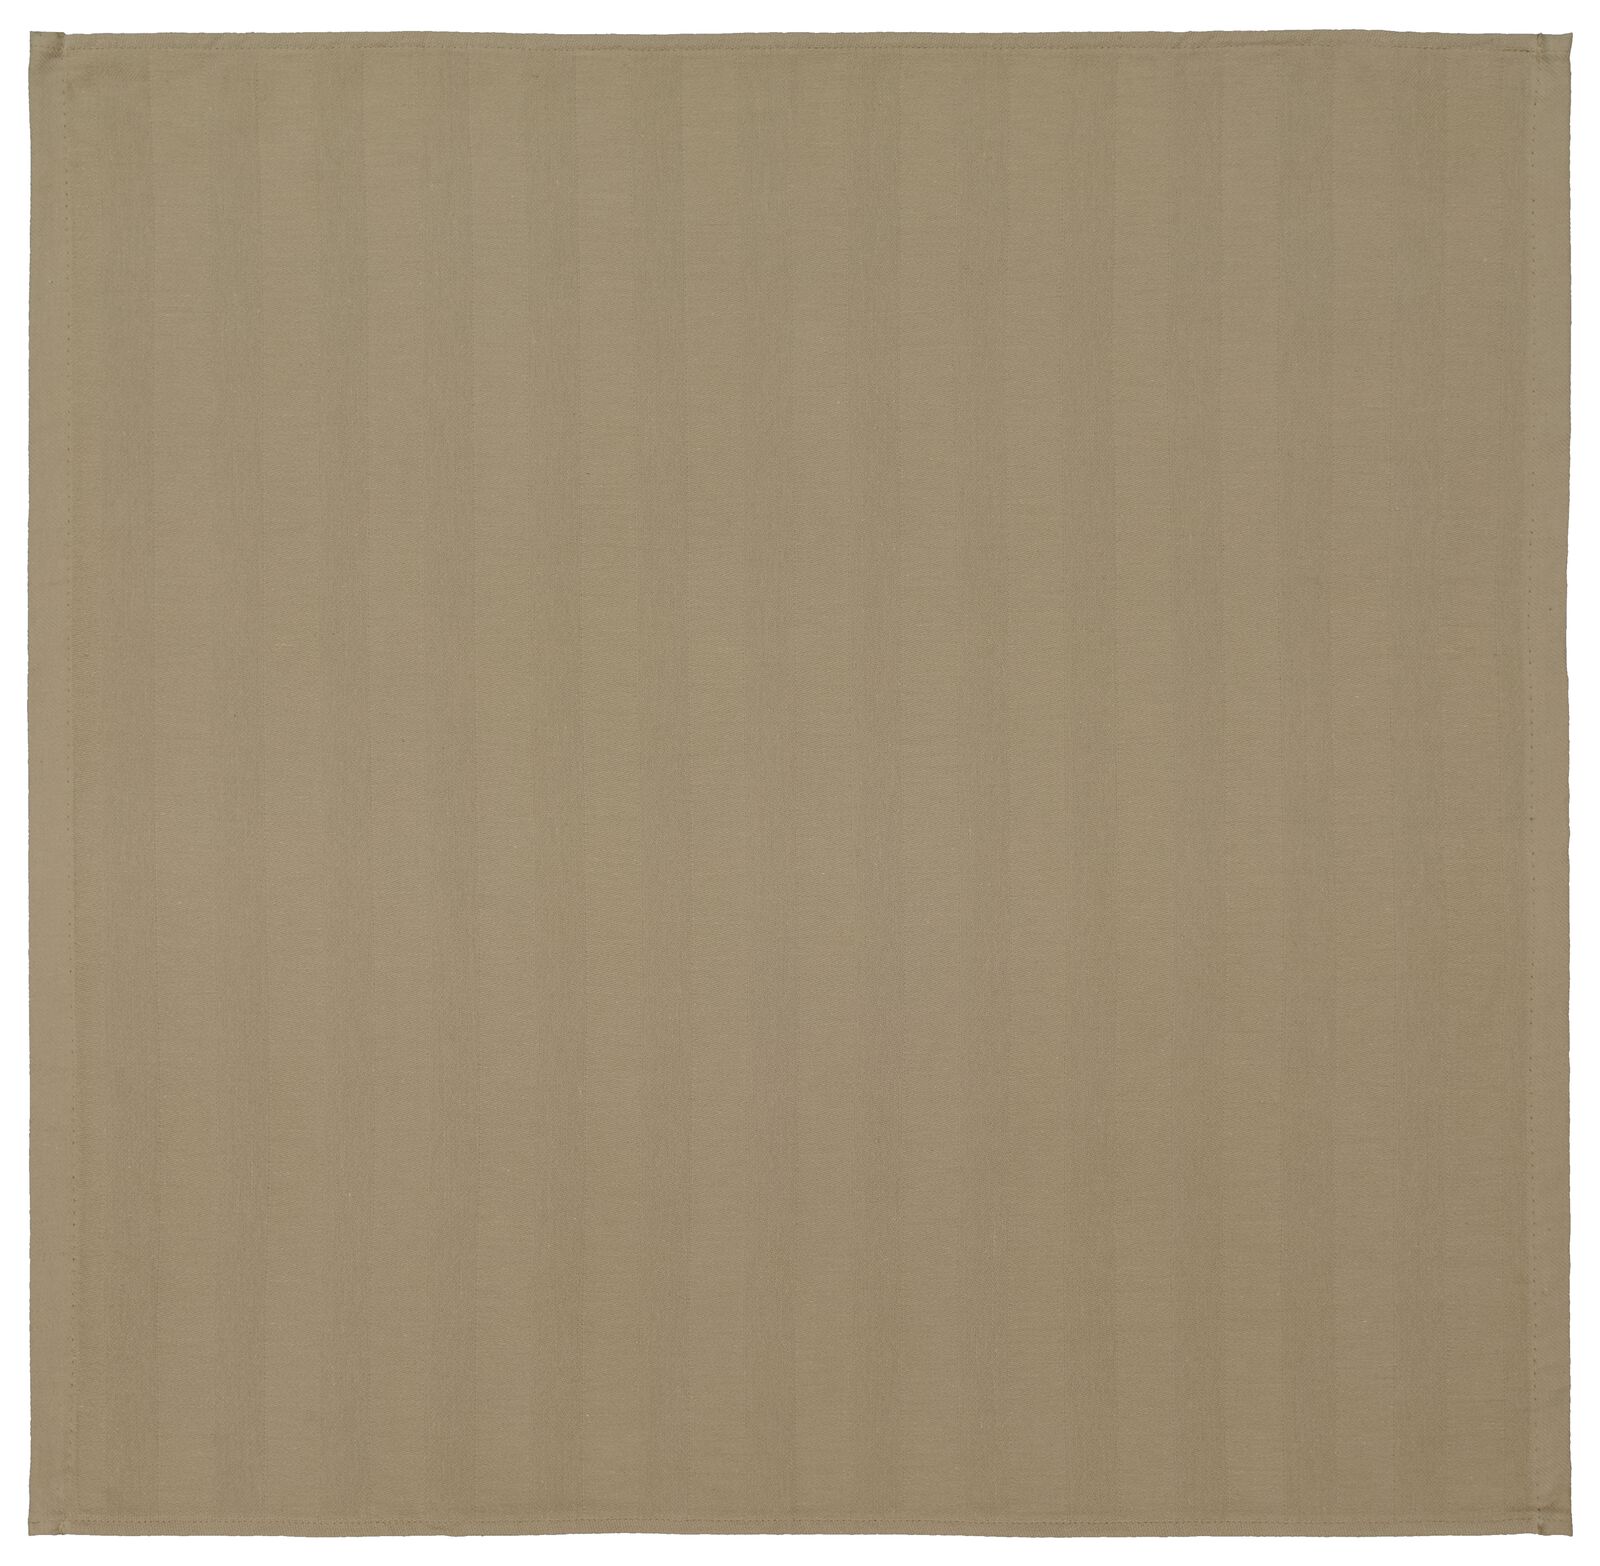 Geschirrtuch, 65 x 65 cm, Baumwolle, sandfarben - 5420084 - HEMA